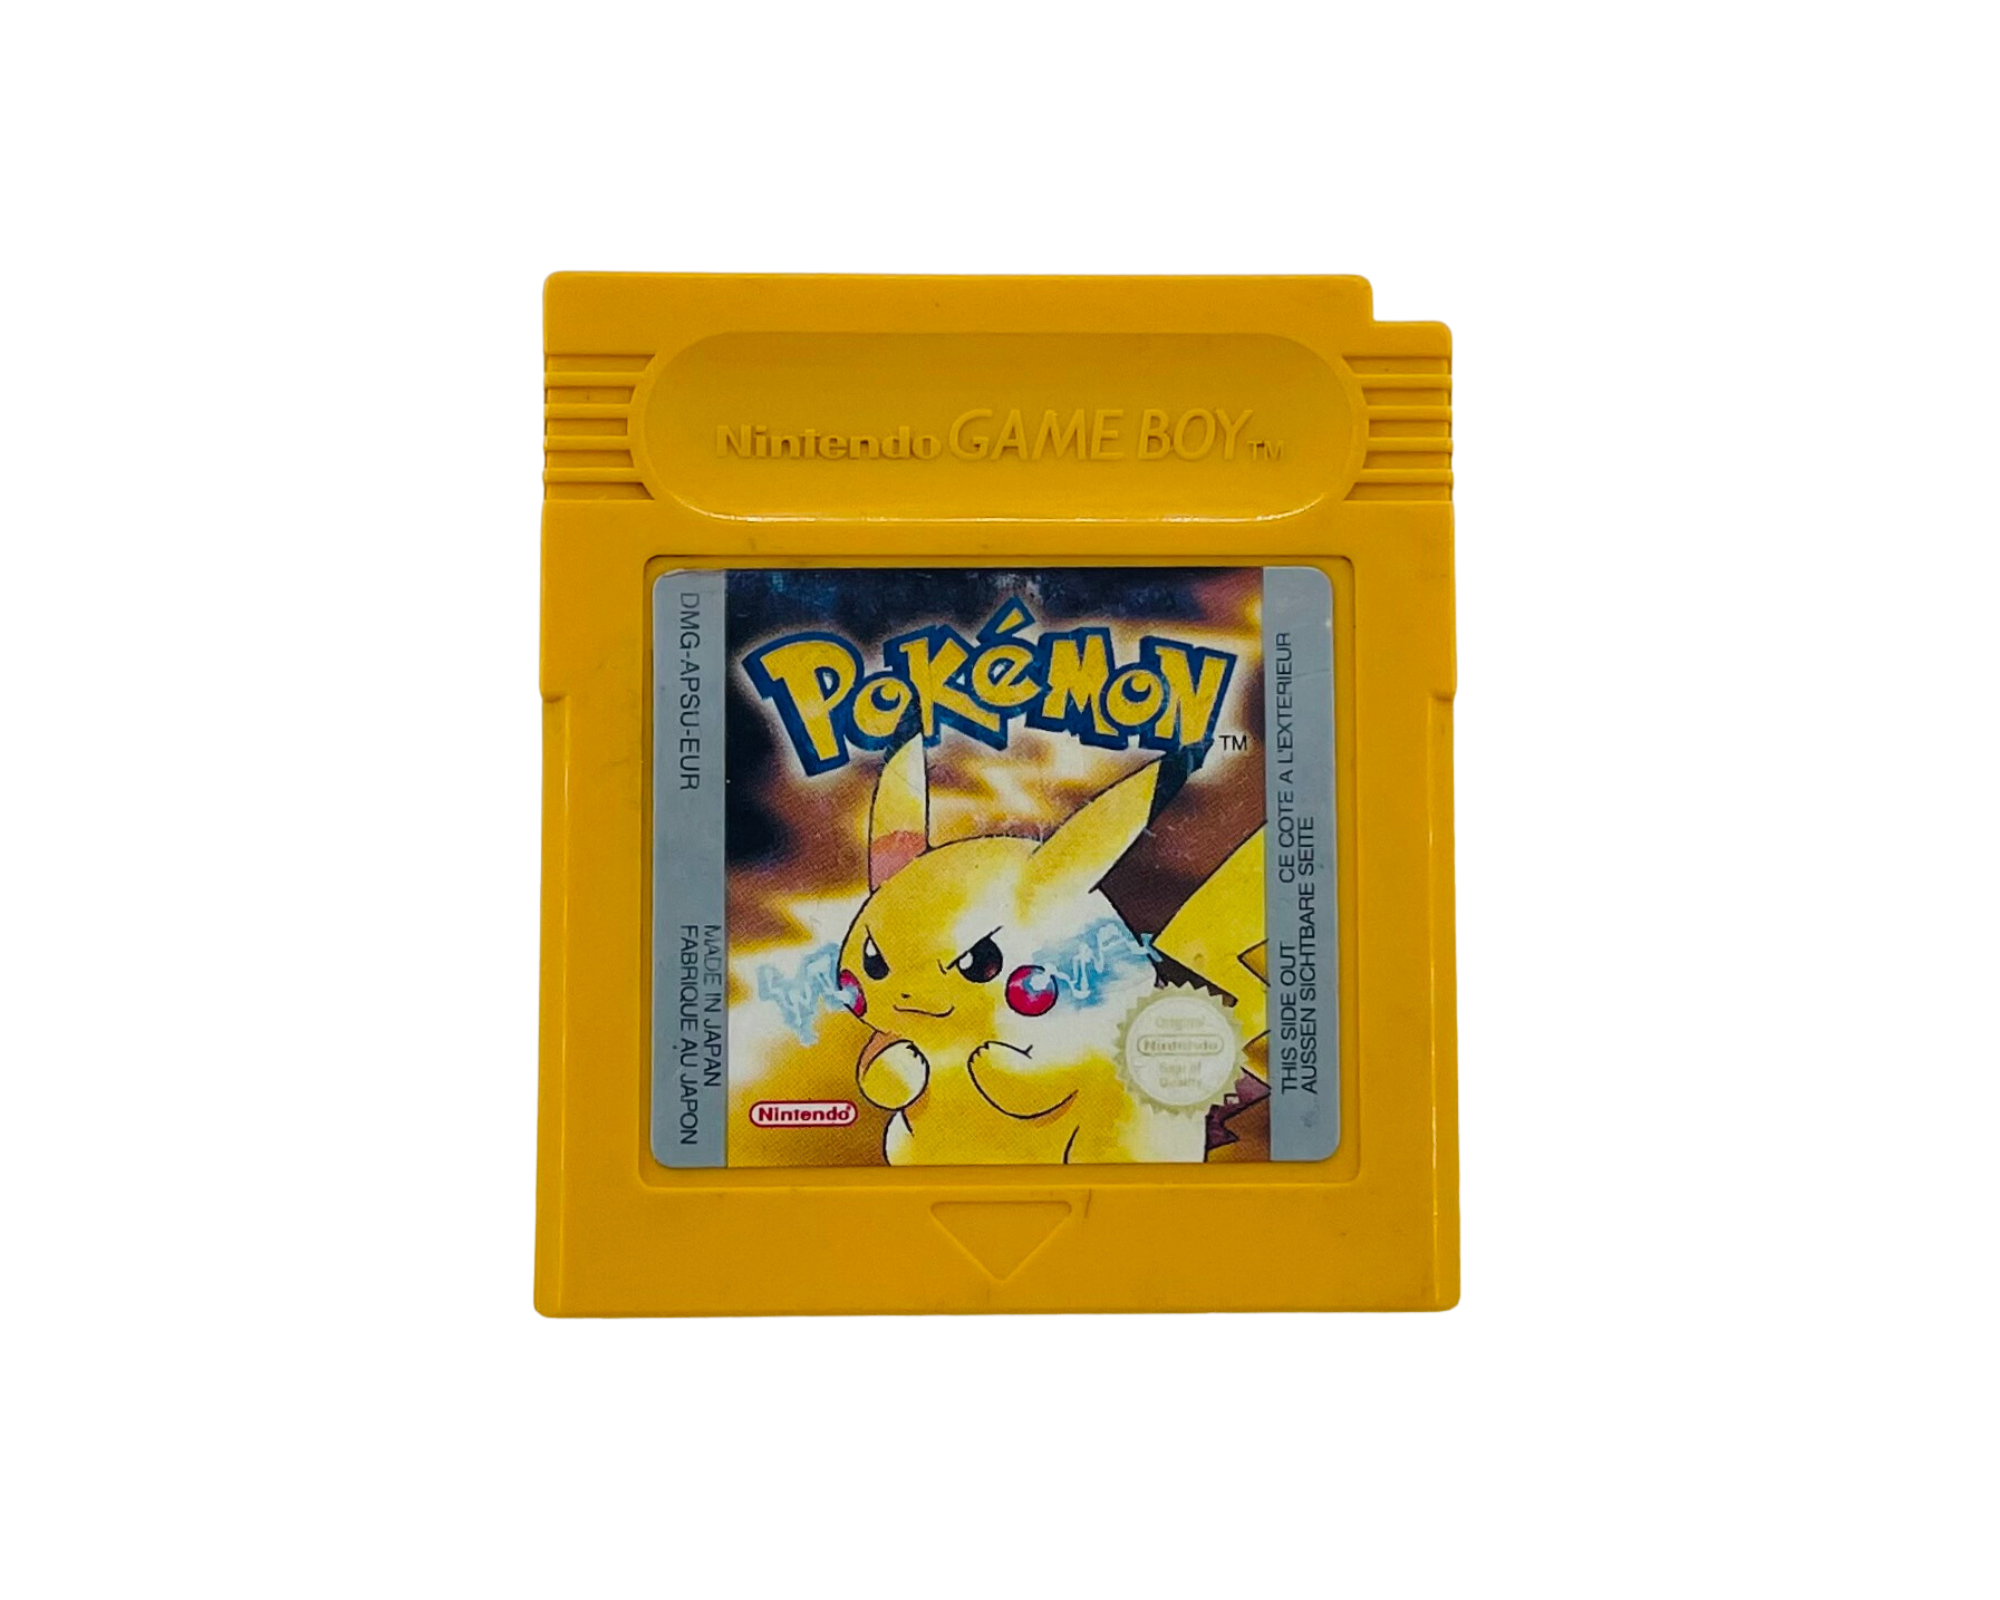 Pokémon Yellow